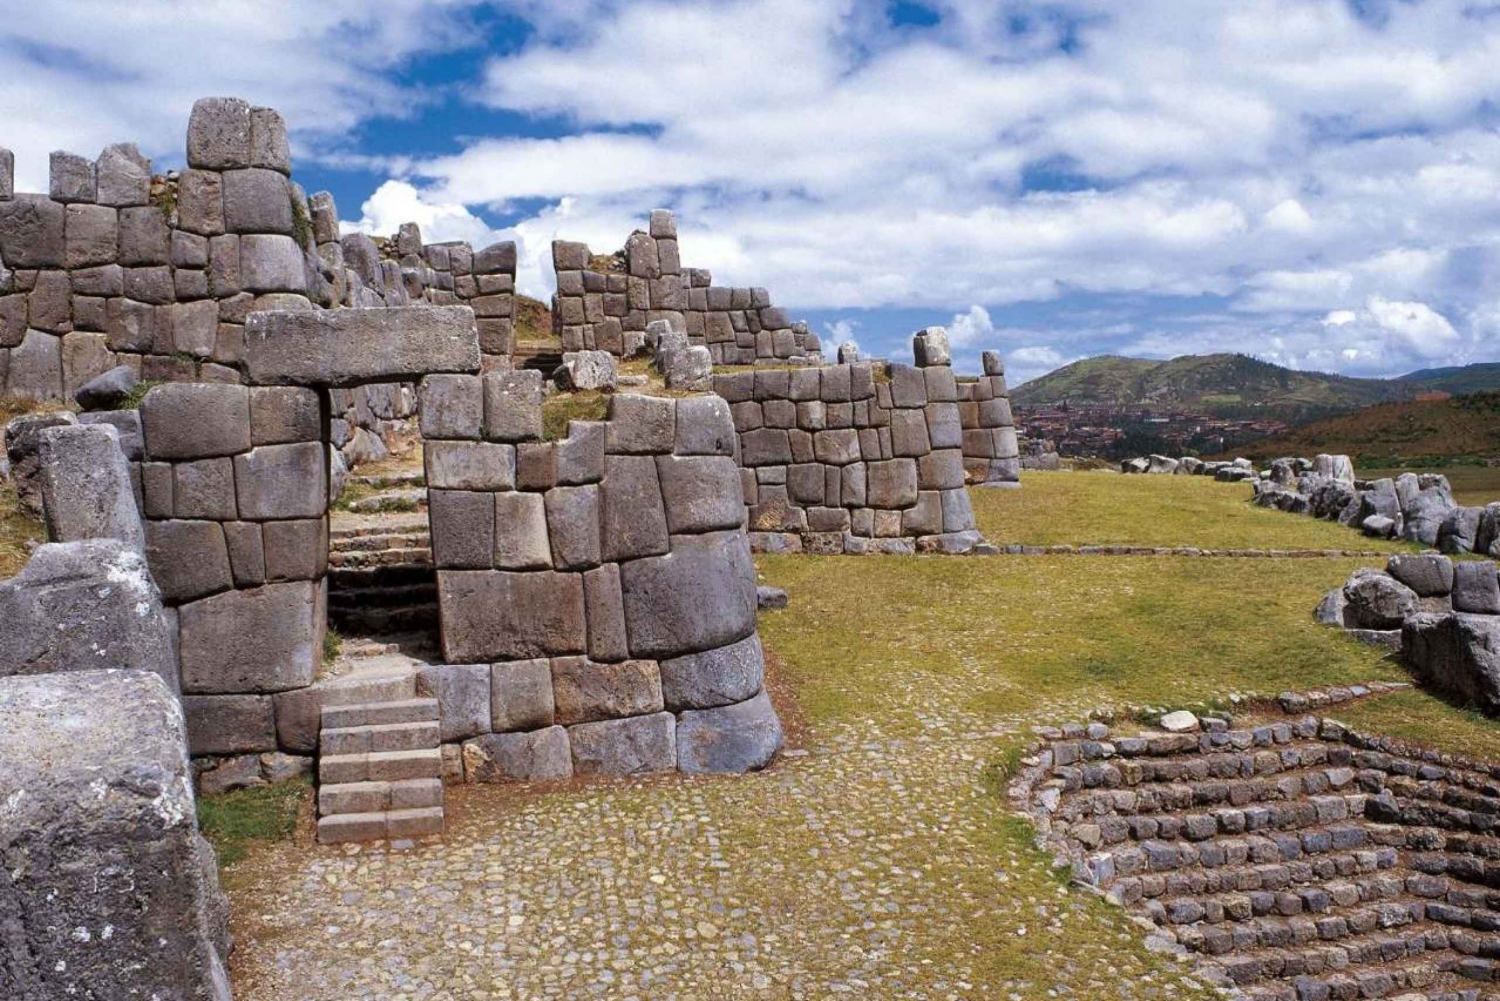 |Tour Cusco, Valle Sagrado, Machu Picchu - Bolivia 13 Días